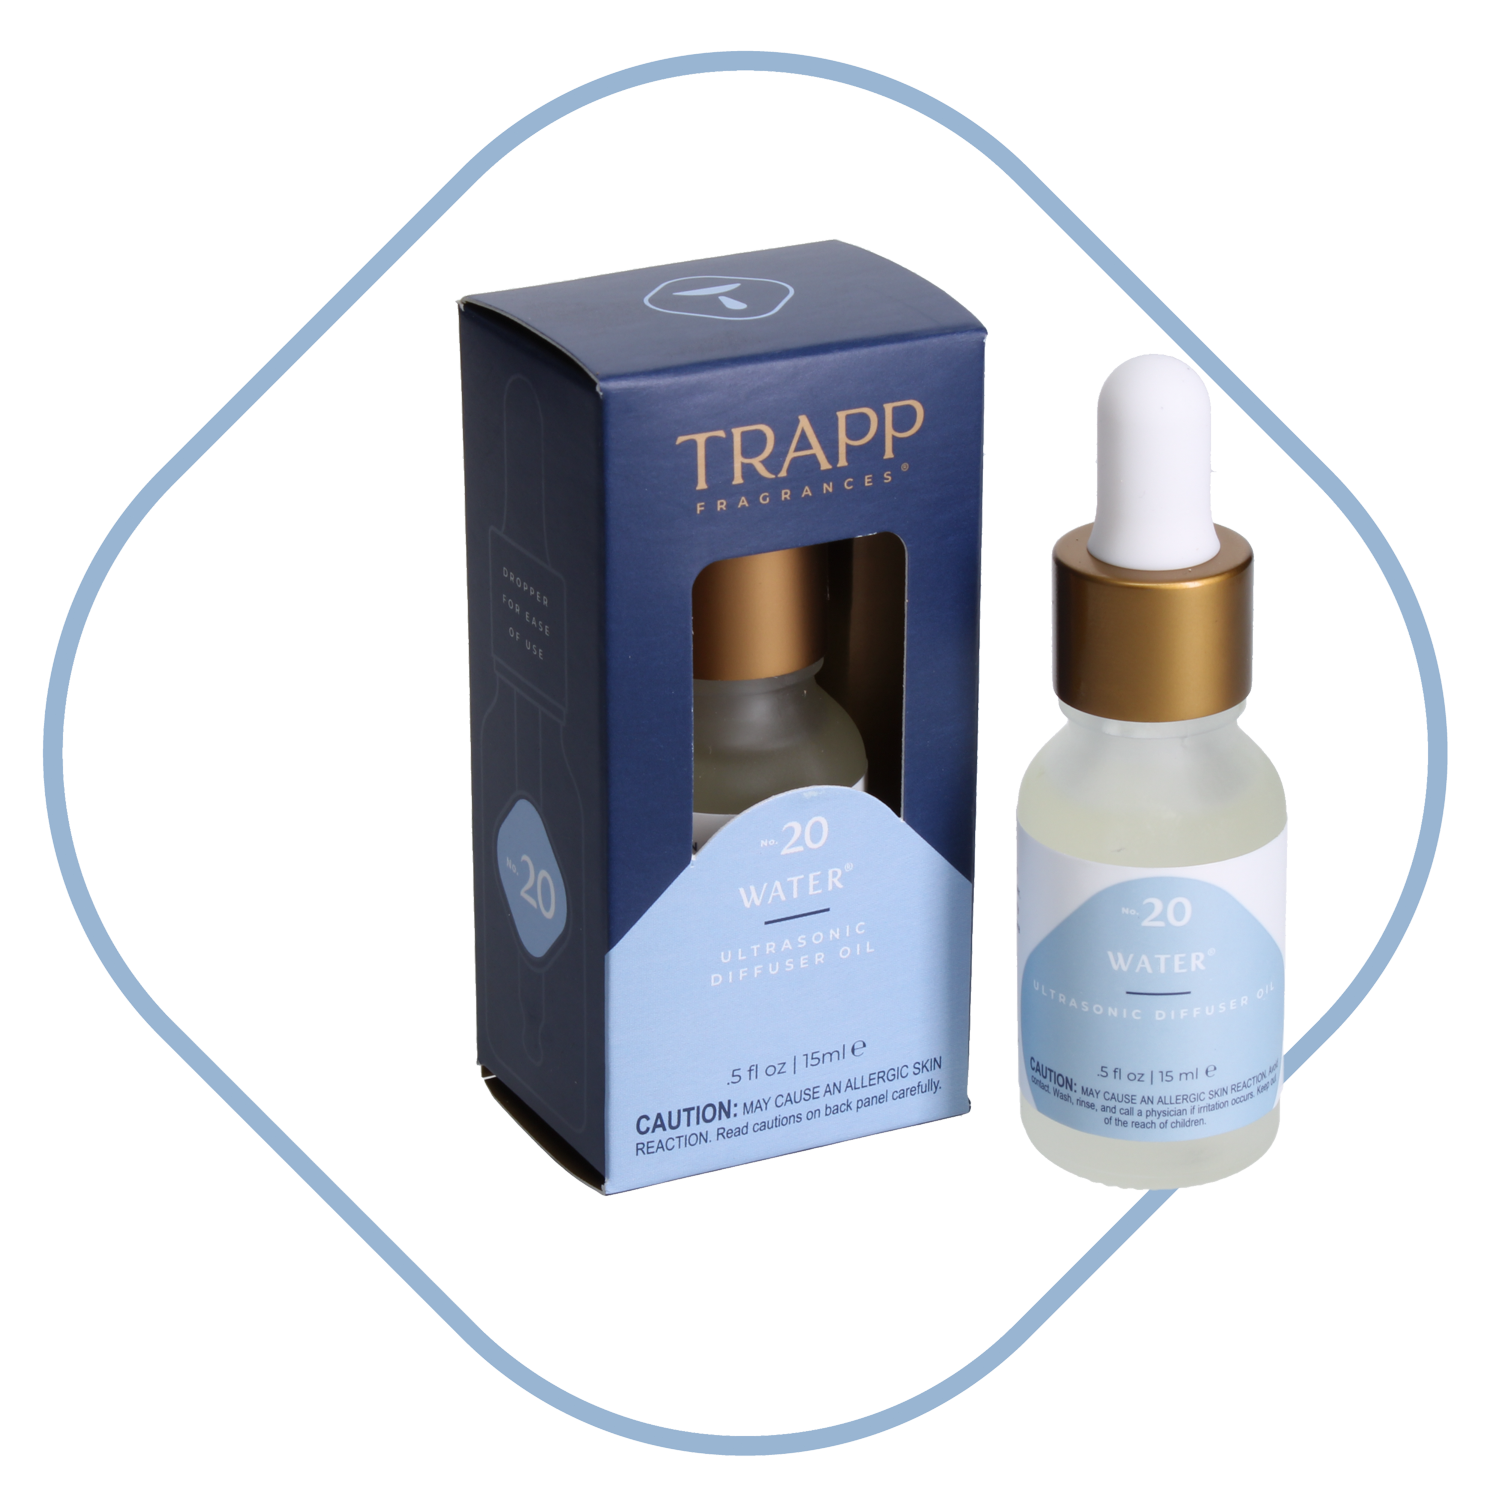 Ultrasonic Diffuser Oil Trapp Fragrances Color: Blue, Scent: Fresh